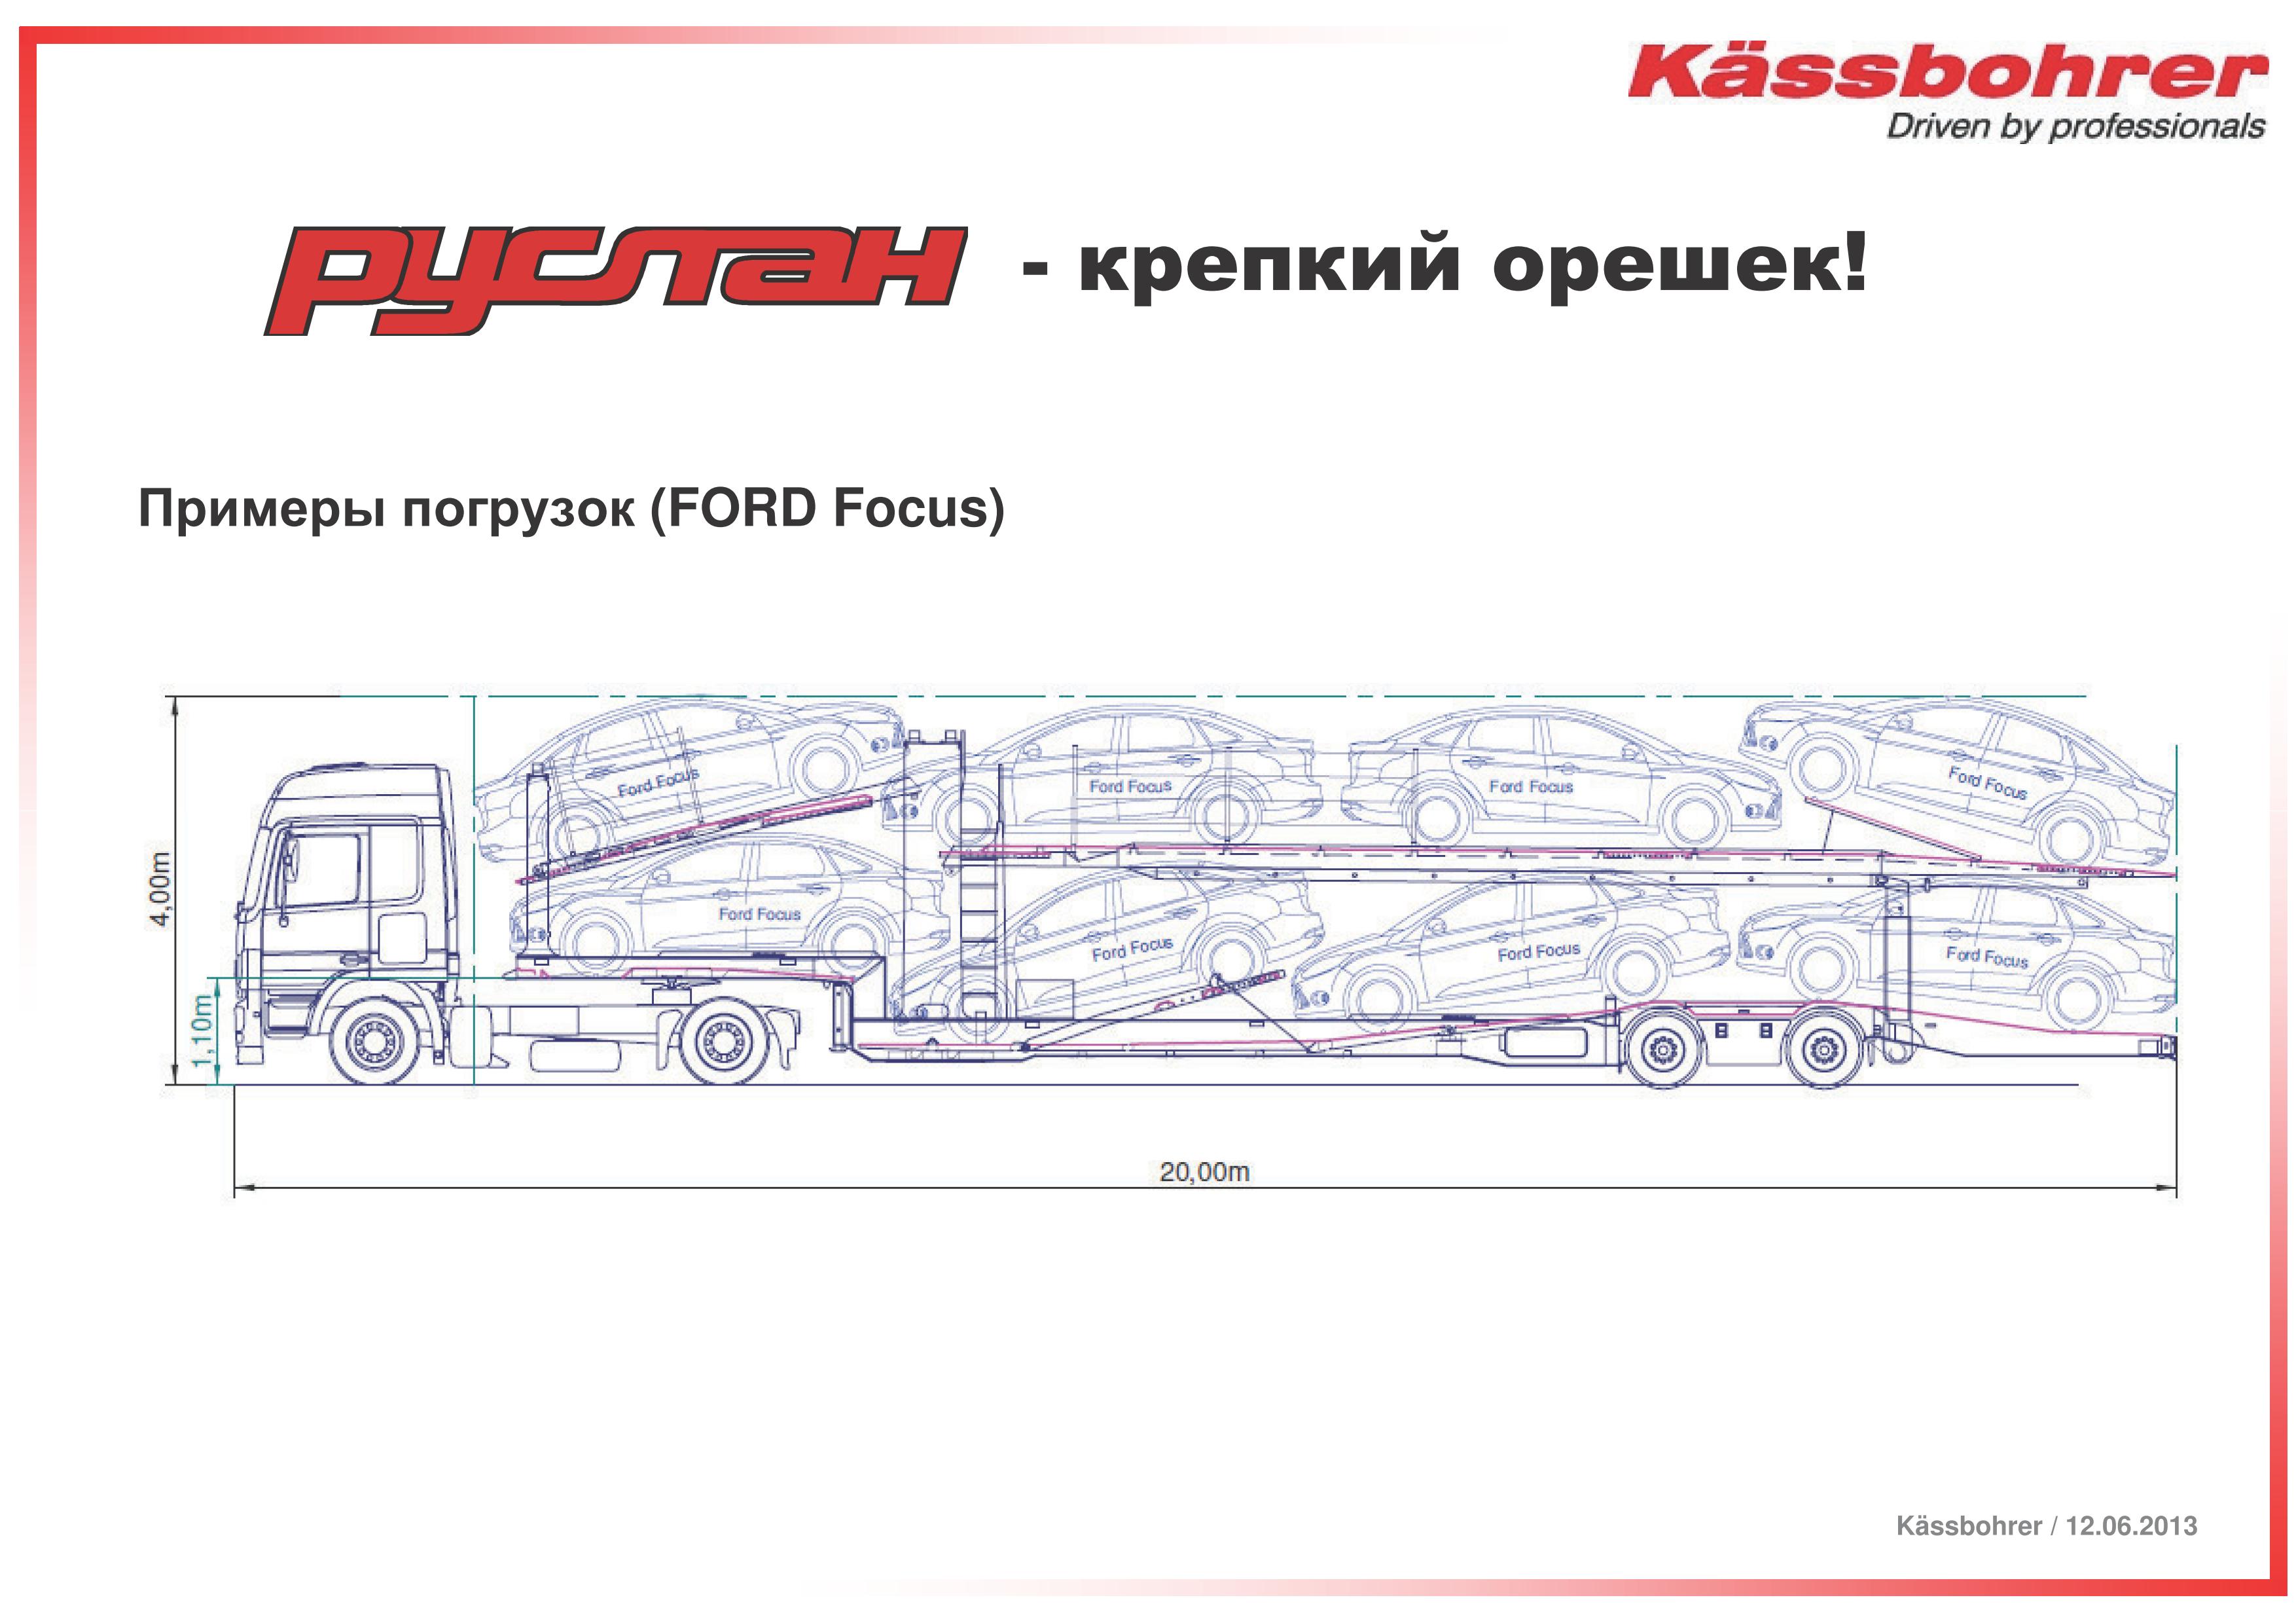 Спецавтолэнд - Полуприцепы-щеповозы с подвижным полом  – Kassbohrer полуприцеп-автовоз модель RUSLAN, НОВЫЙ